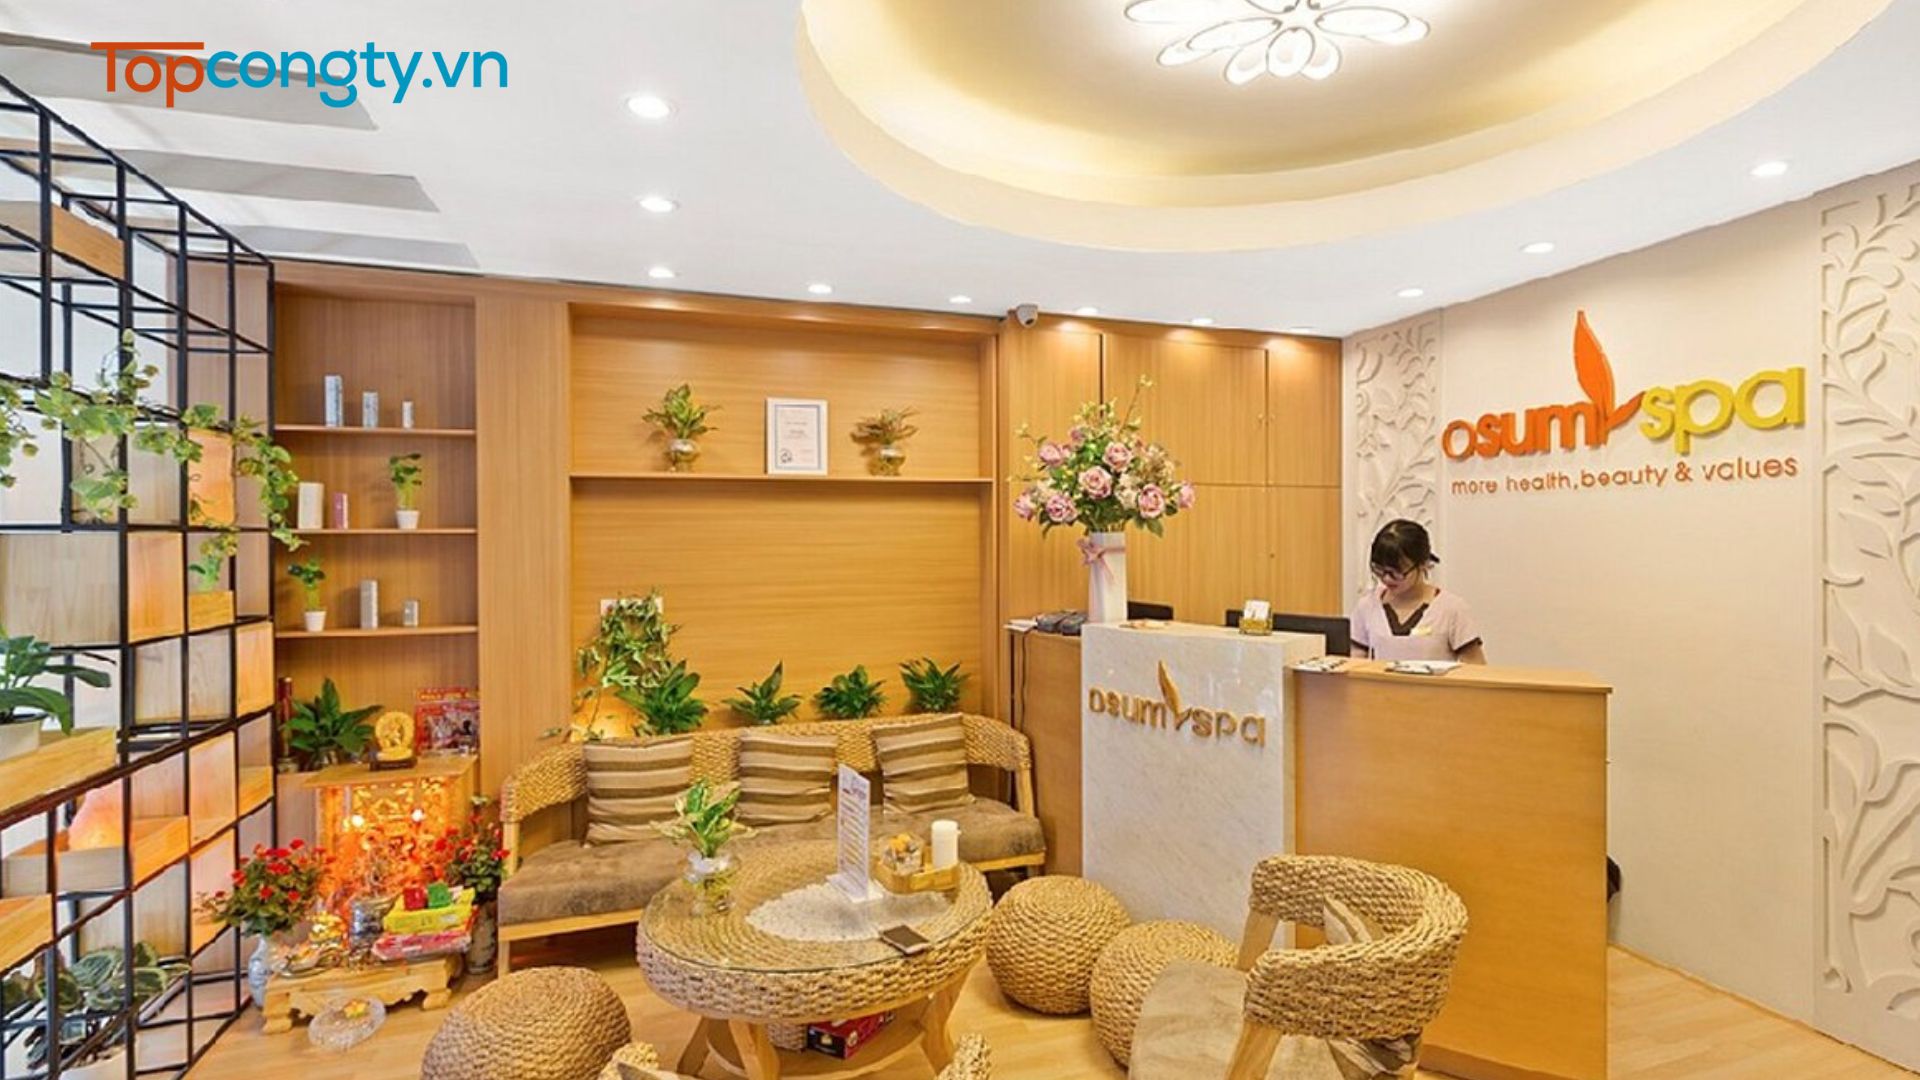 Osum Spa - Địa điểm massage ở Hà Nội chất lượng cao